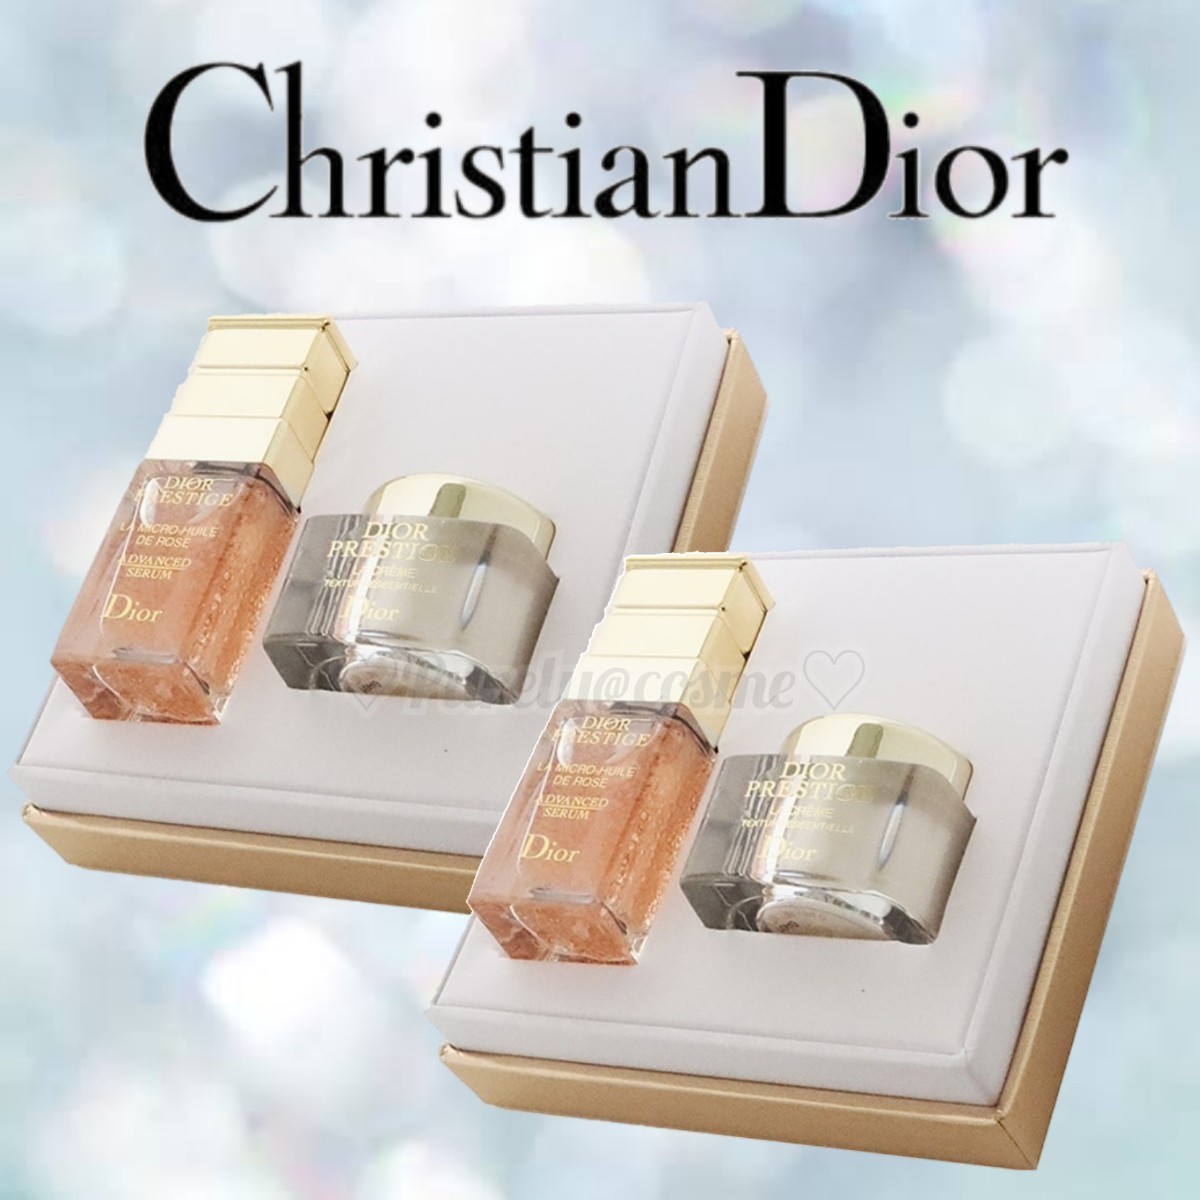 【Dior】 ディオール プレステージ マイクロ ユイル ド ローズ セラム + ラ クレーム スペシャルキット 2set